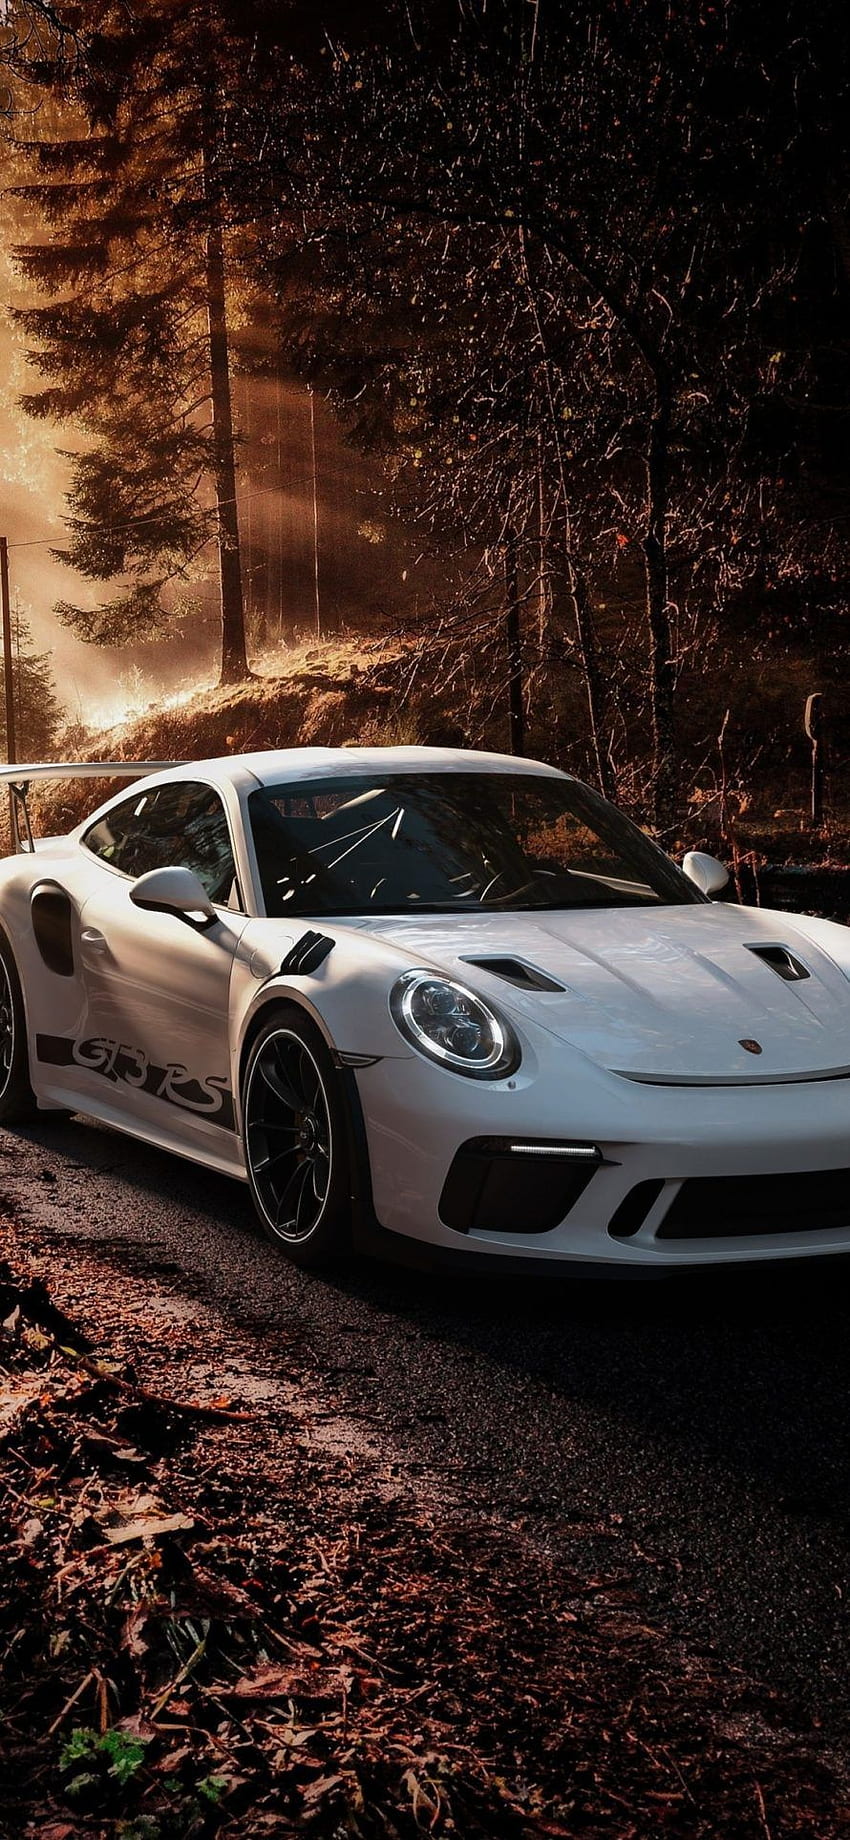 Tải xuống APK Porsche Wallpaper cho Android